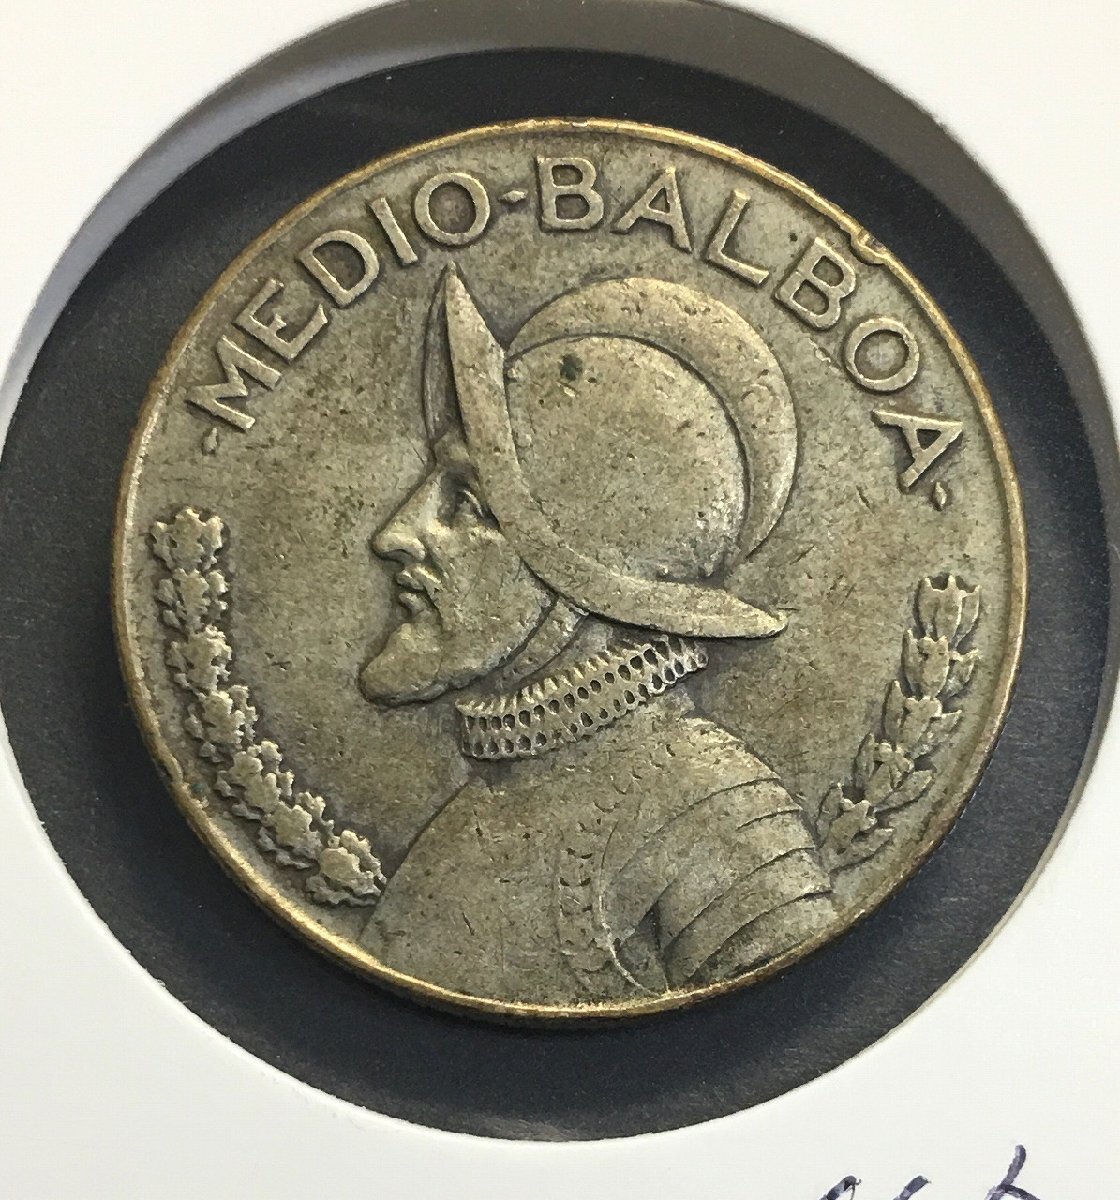 パナマ銀貨 1/2-バルボス 1967年 MEDIO・BALBOA 量目12.5g 美品 収集ワールド_写真実物「収集ワールド」